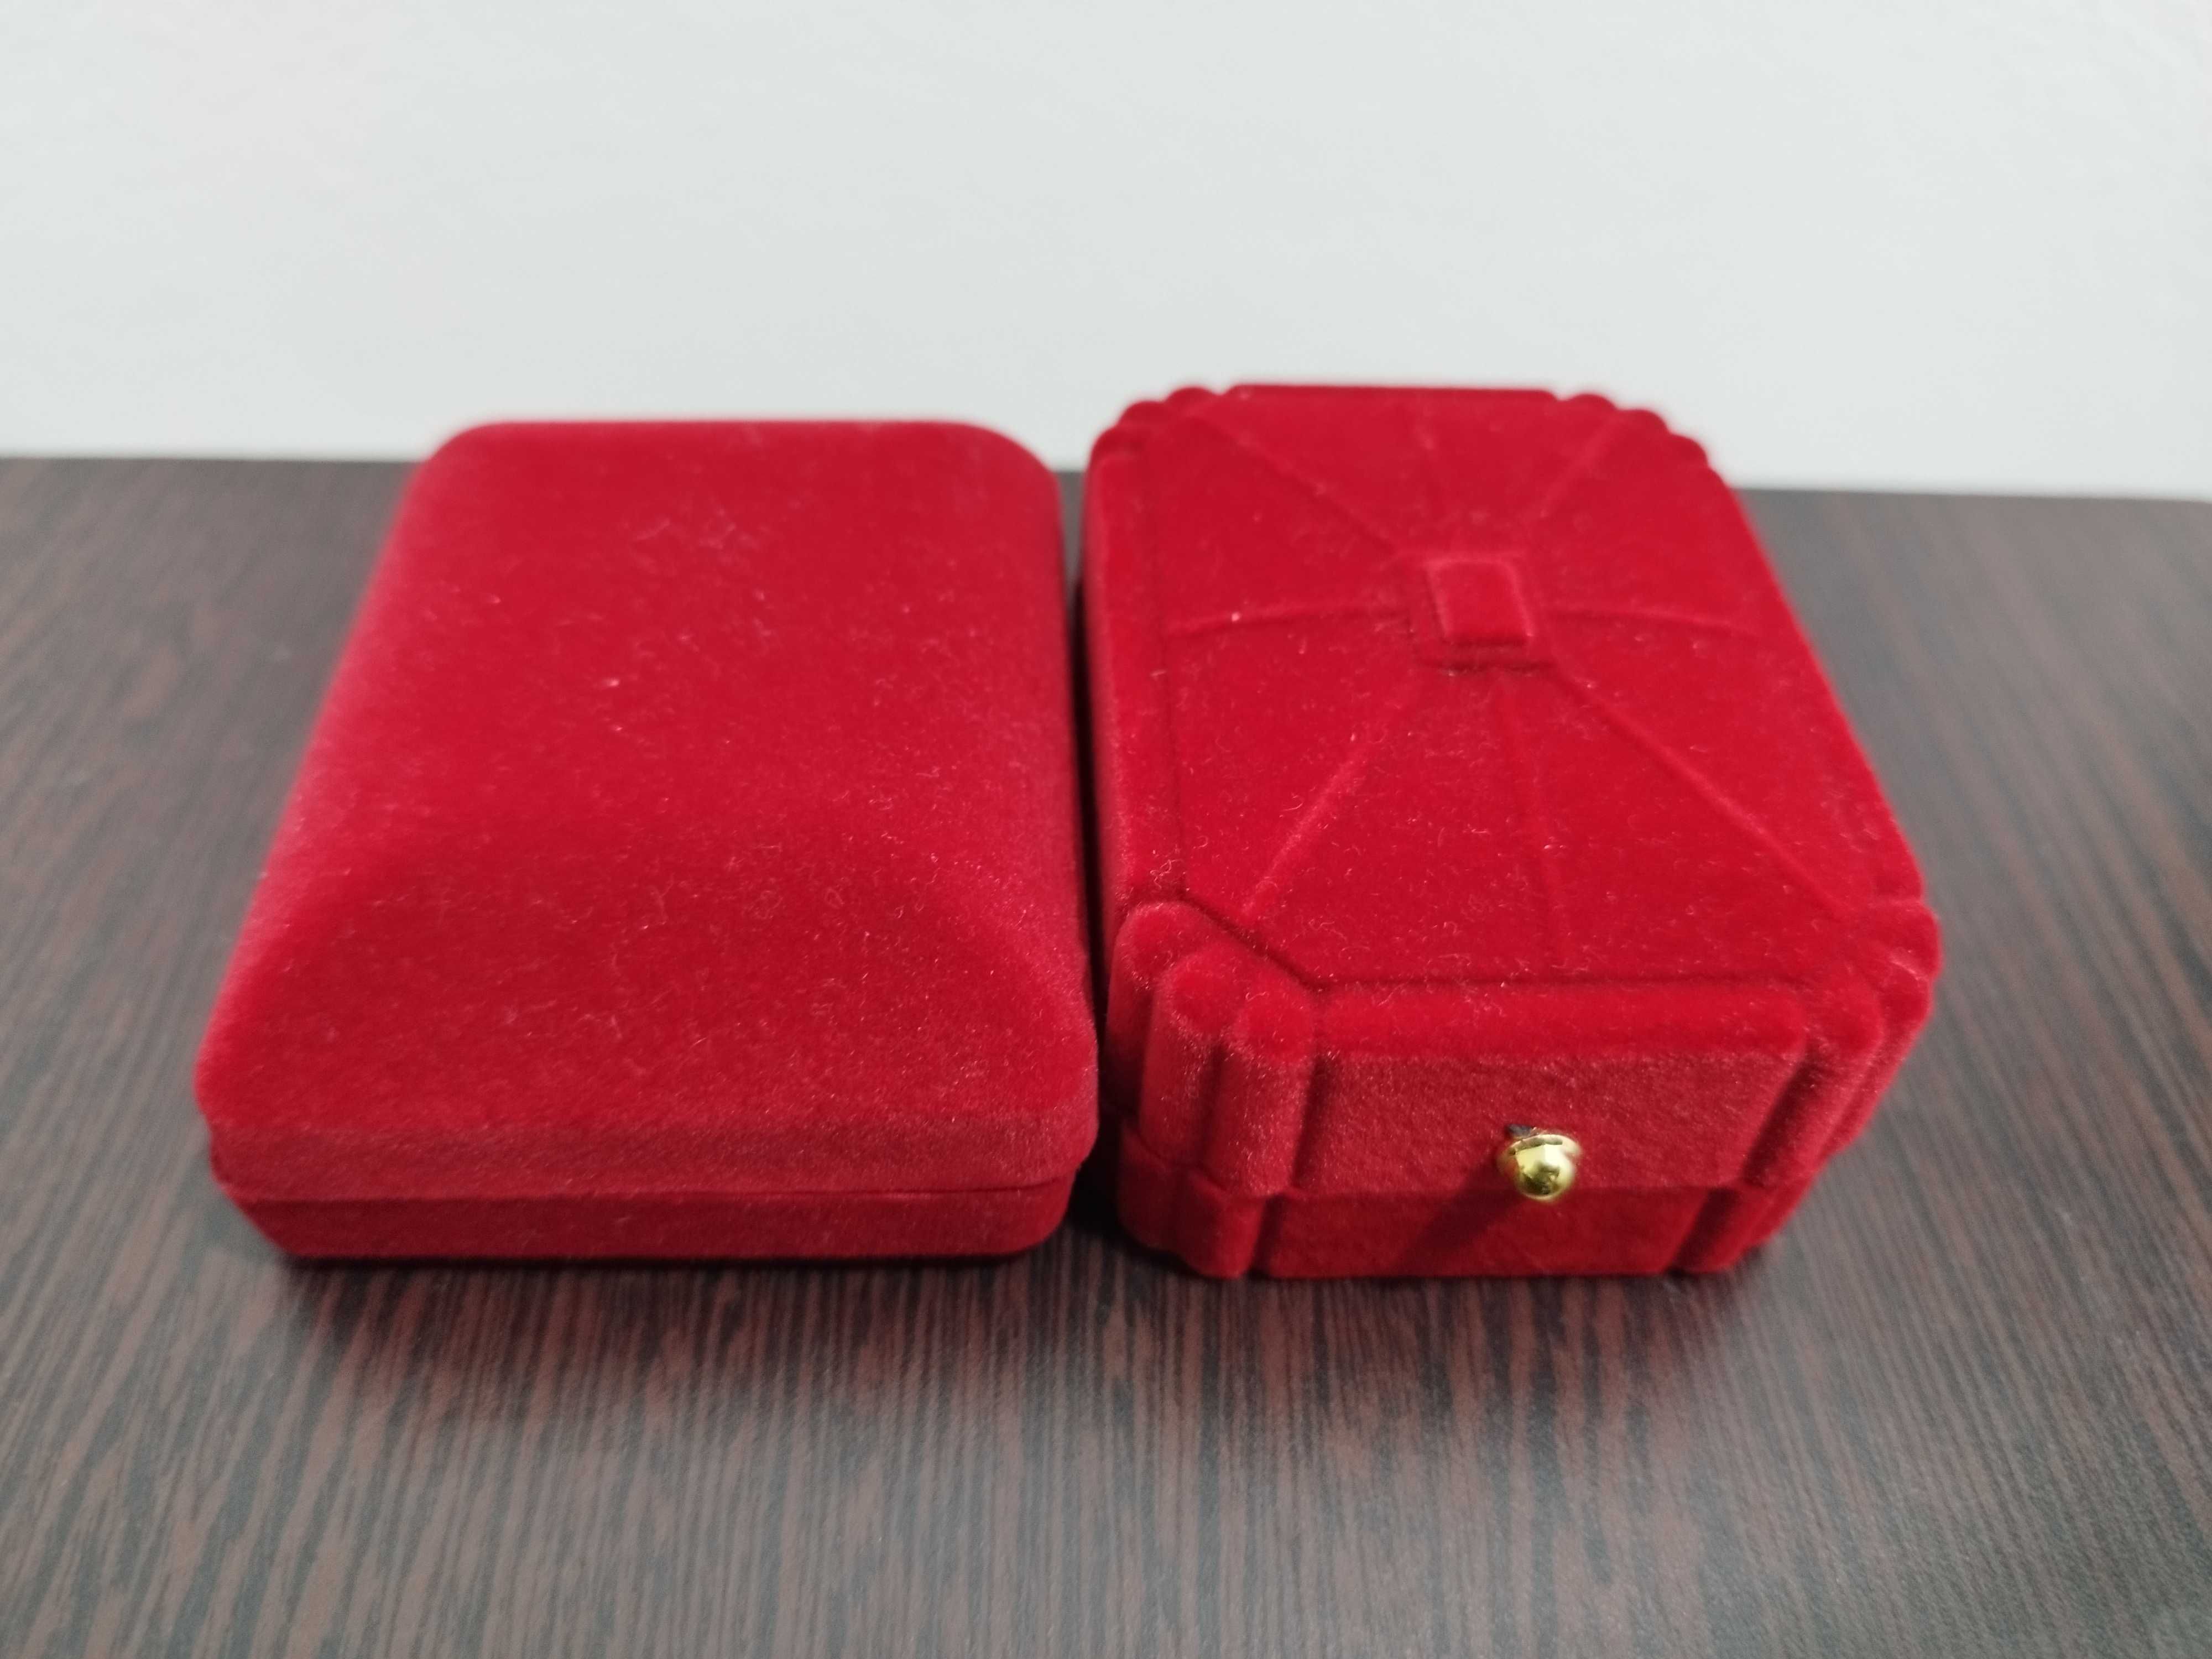 2 Bratari Unisex in cutie ,ideal ptr cadou